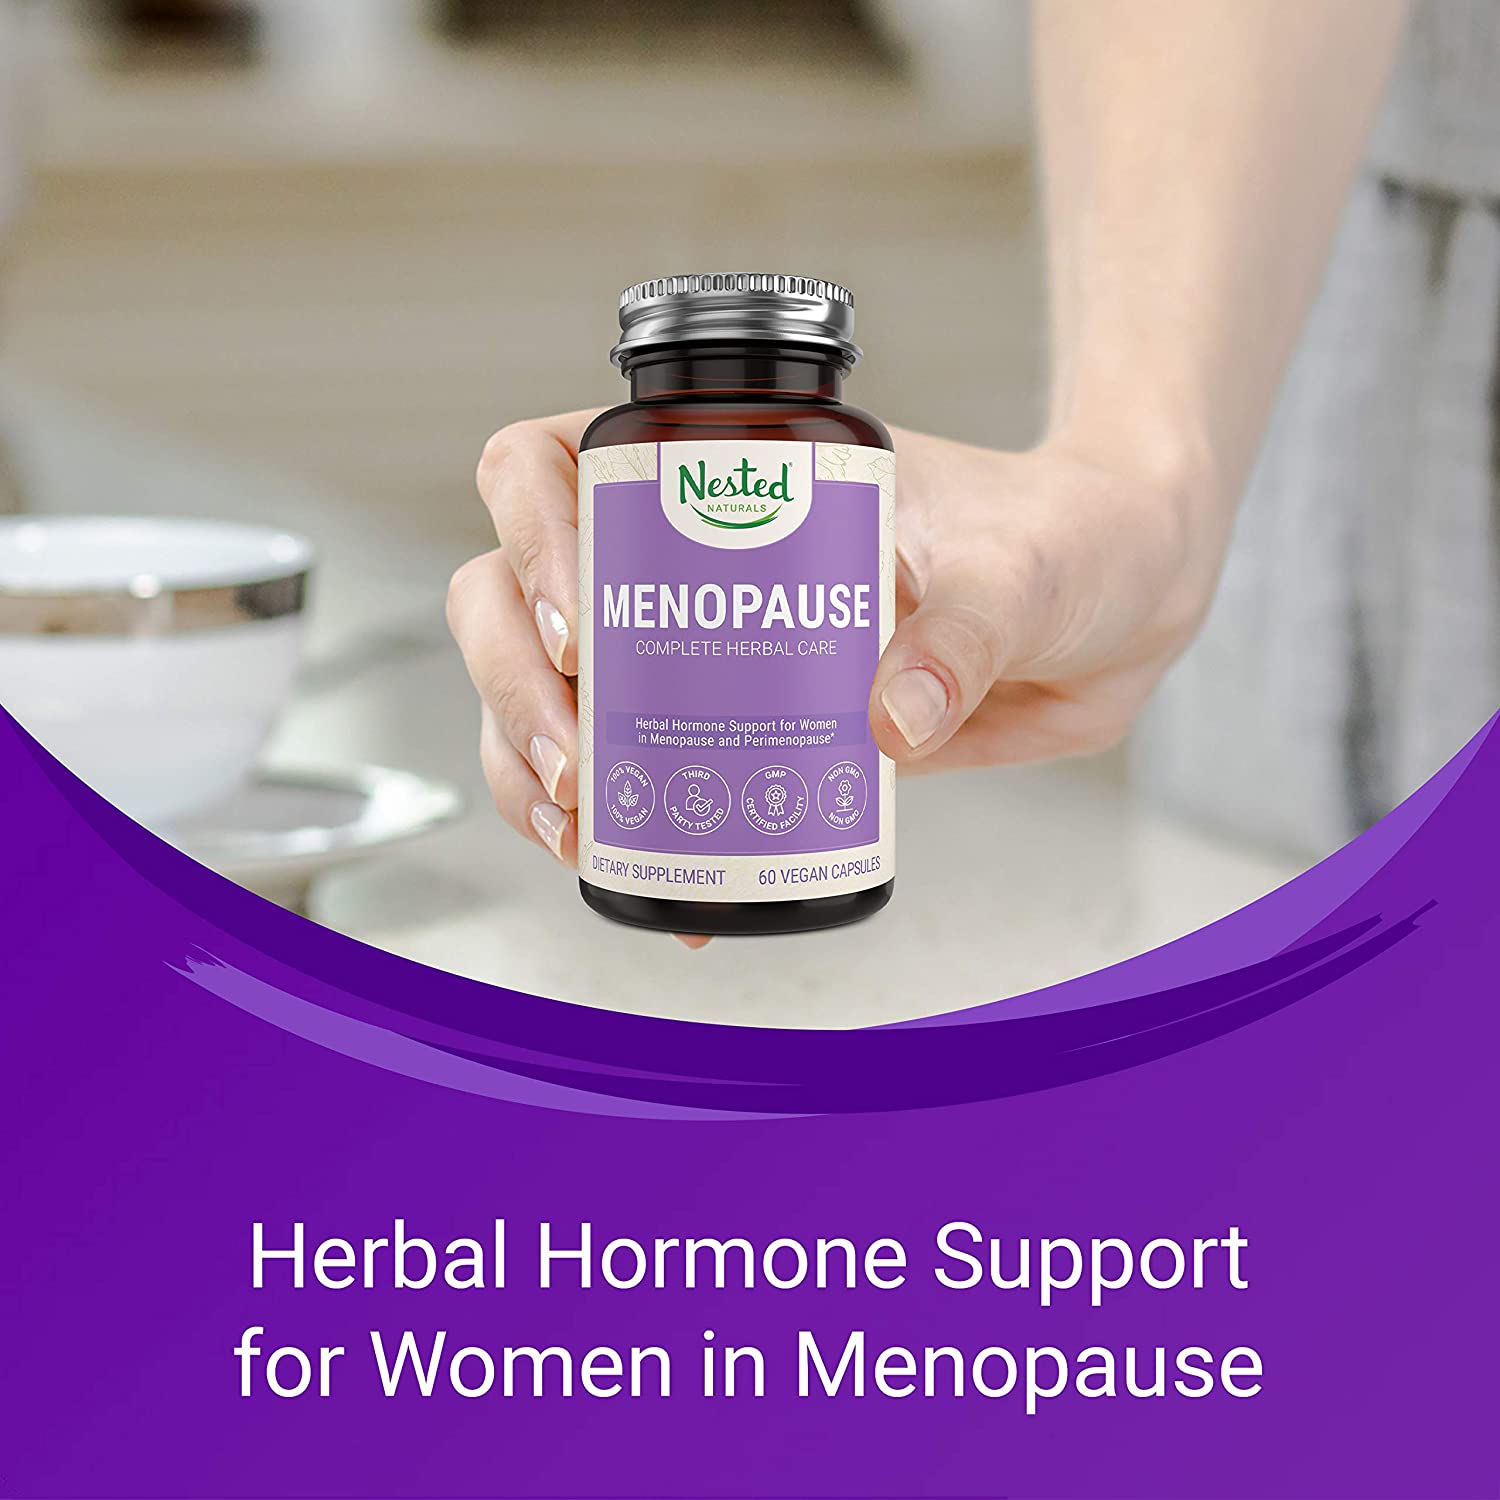 อาหารเสริม Black Cohosh ยี่ห้อที่ไหนดีเป็นอันดับที่ 7 ของอเมริกา	แบล็กโคฮอส	Nested Naturals Menopause Complete Herbal Care Supplement for Women